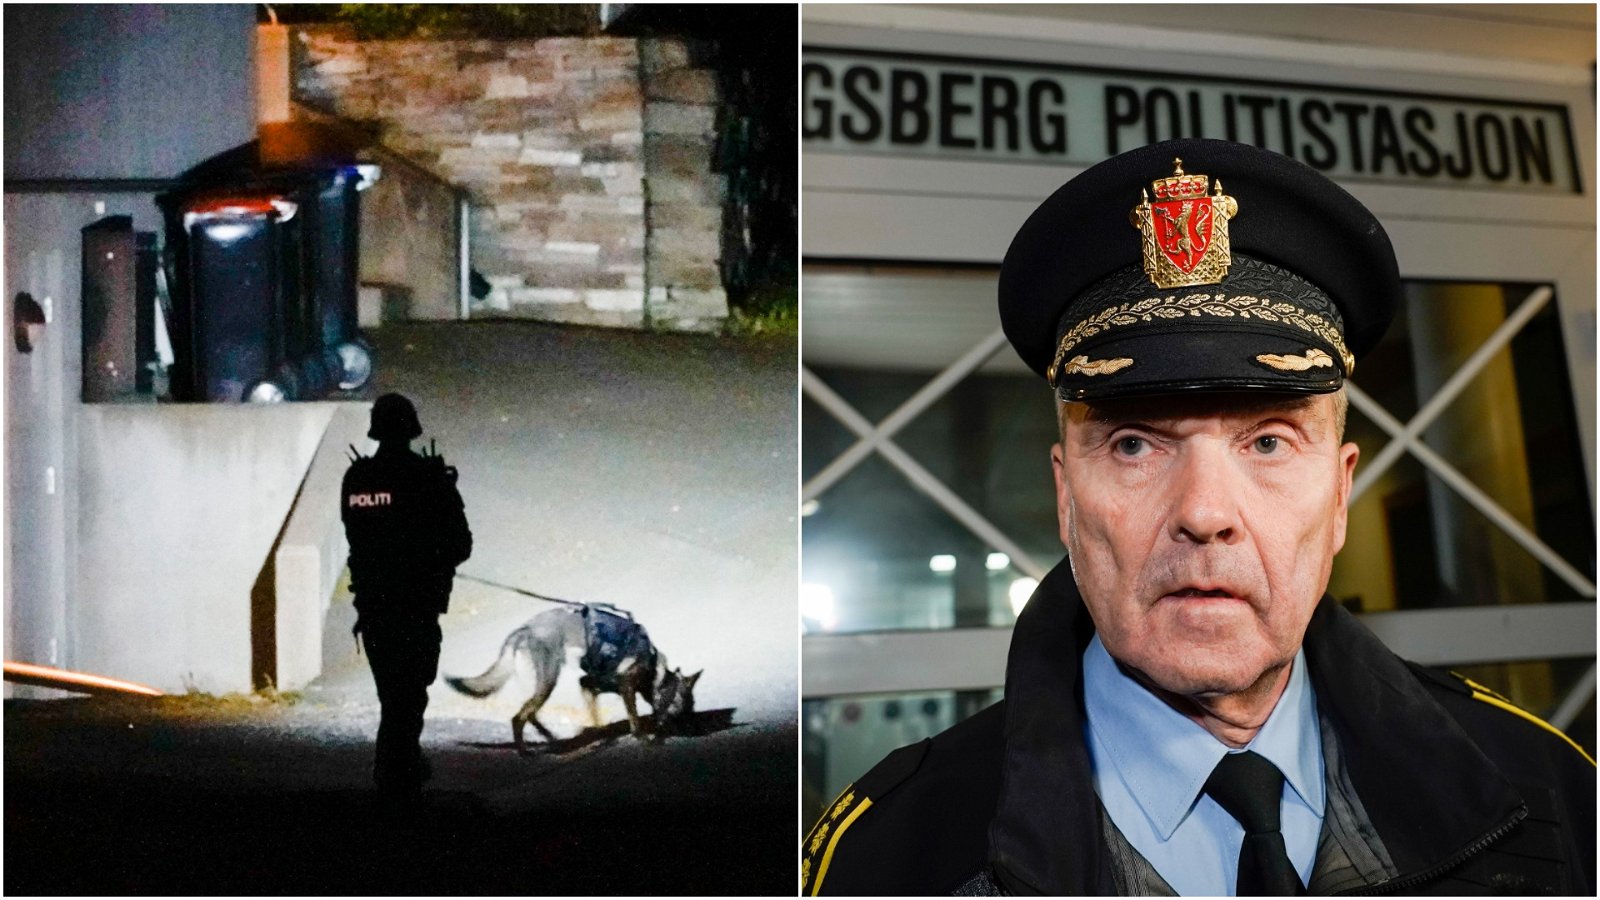 5 døde og 2 sårede etter pil- og bueangrepet i Norge